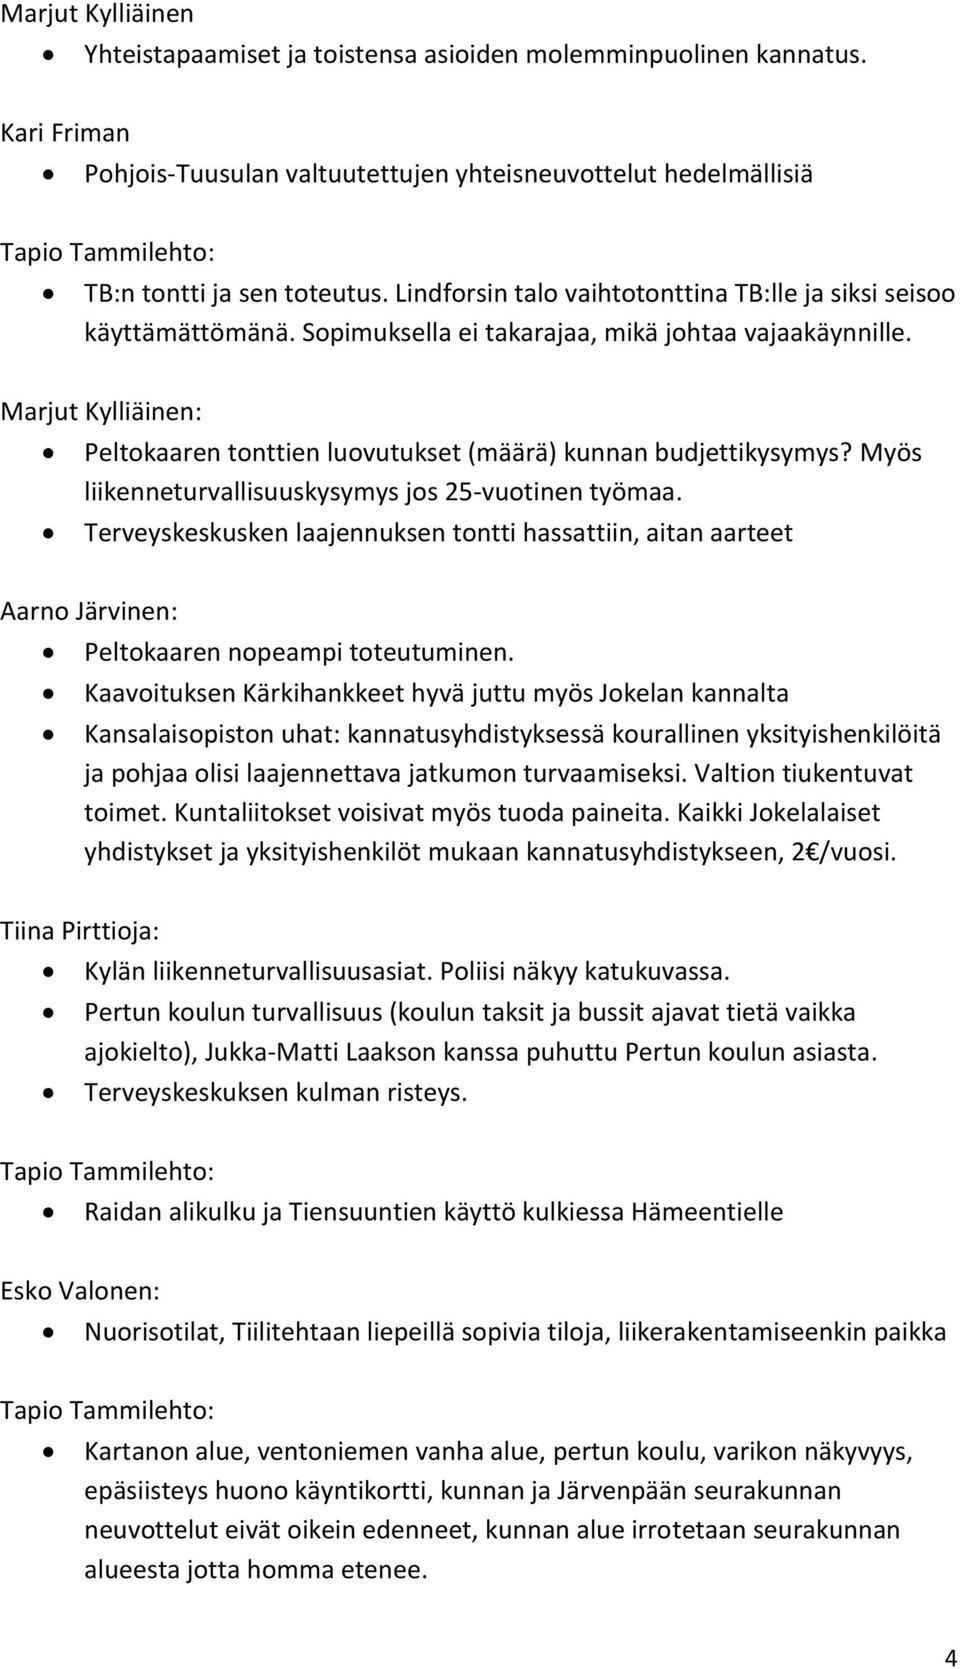 Marjut Kylliäinen: Peltokaaren tonttien luovutukset (määrä) kunnan budjettikysymys? Myös liikenneturvallisuuskysymys jos 25-vuotinen työmaa.